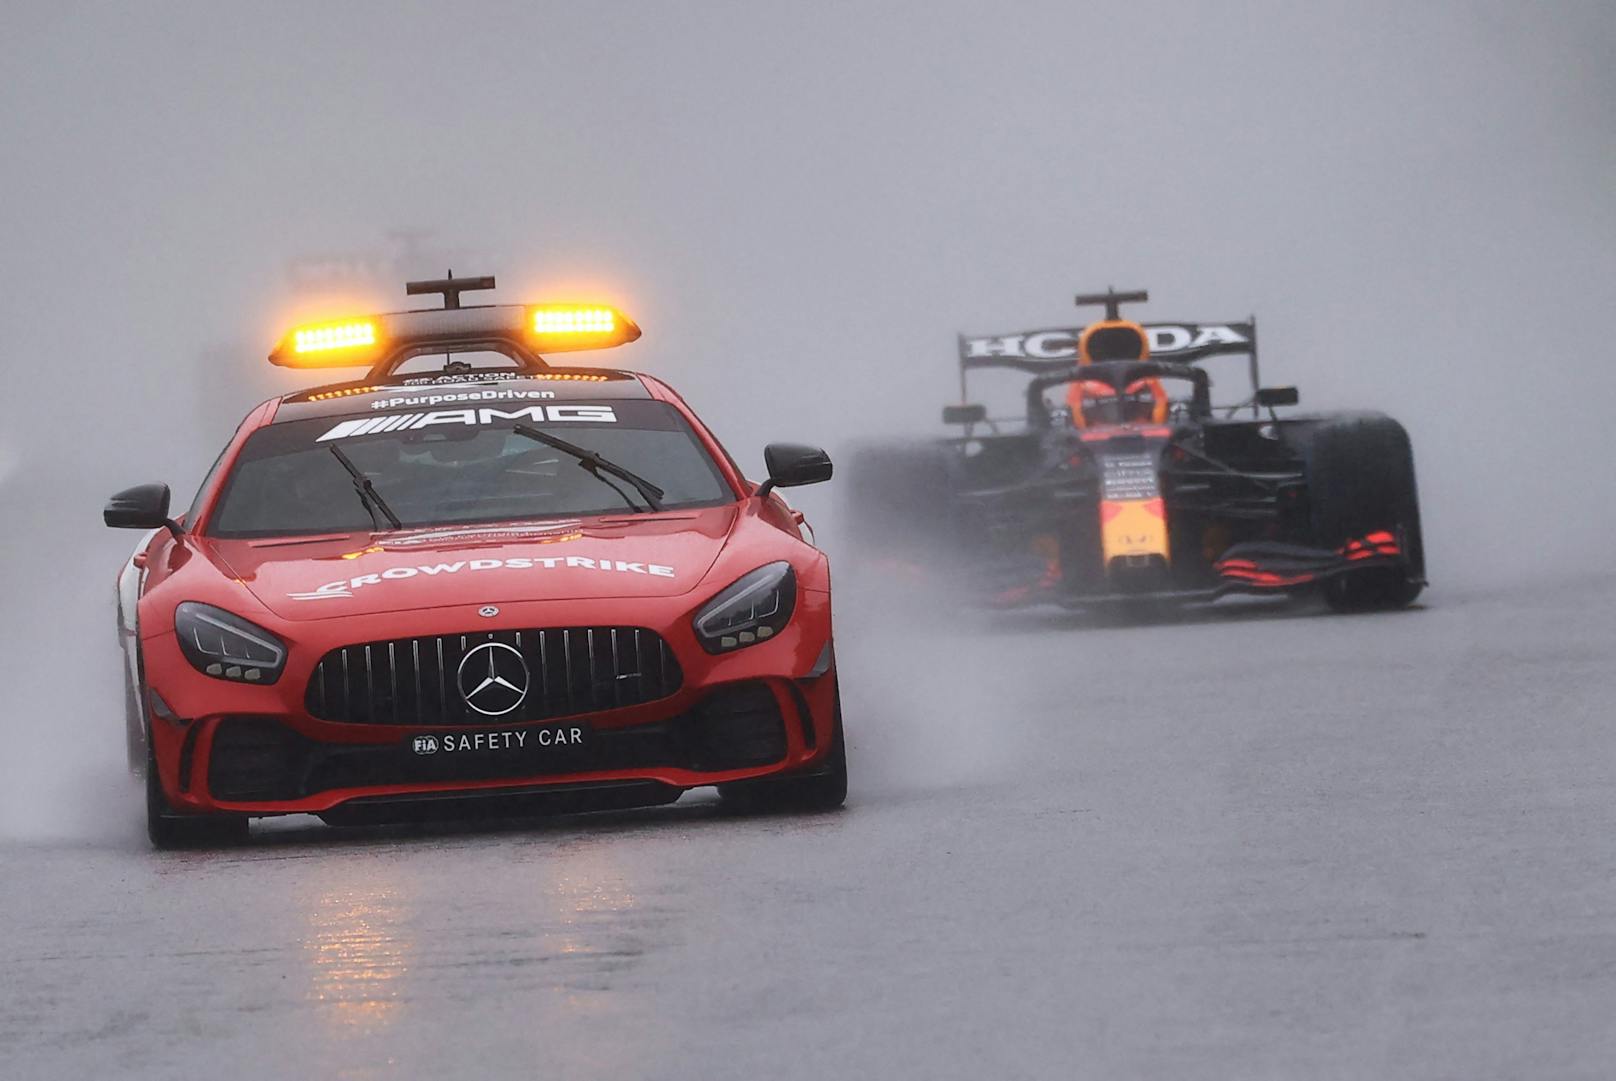 Max Verstappen, ein Sieger ohne Rennen! In Spa wurden aufgrund schwerer Regenfälle nur zwei Runden hinter dem Safety Car gedreht, die halben Punkte wurden vergeben. Die Sensation lieferte Williams-Pilot George Russell mit Platz zwei.